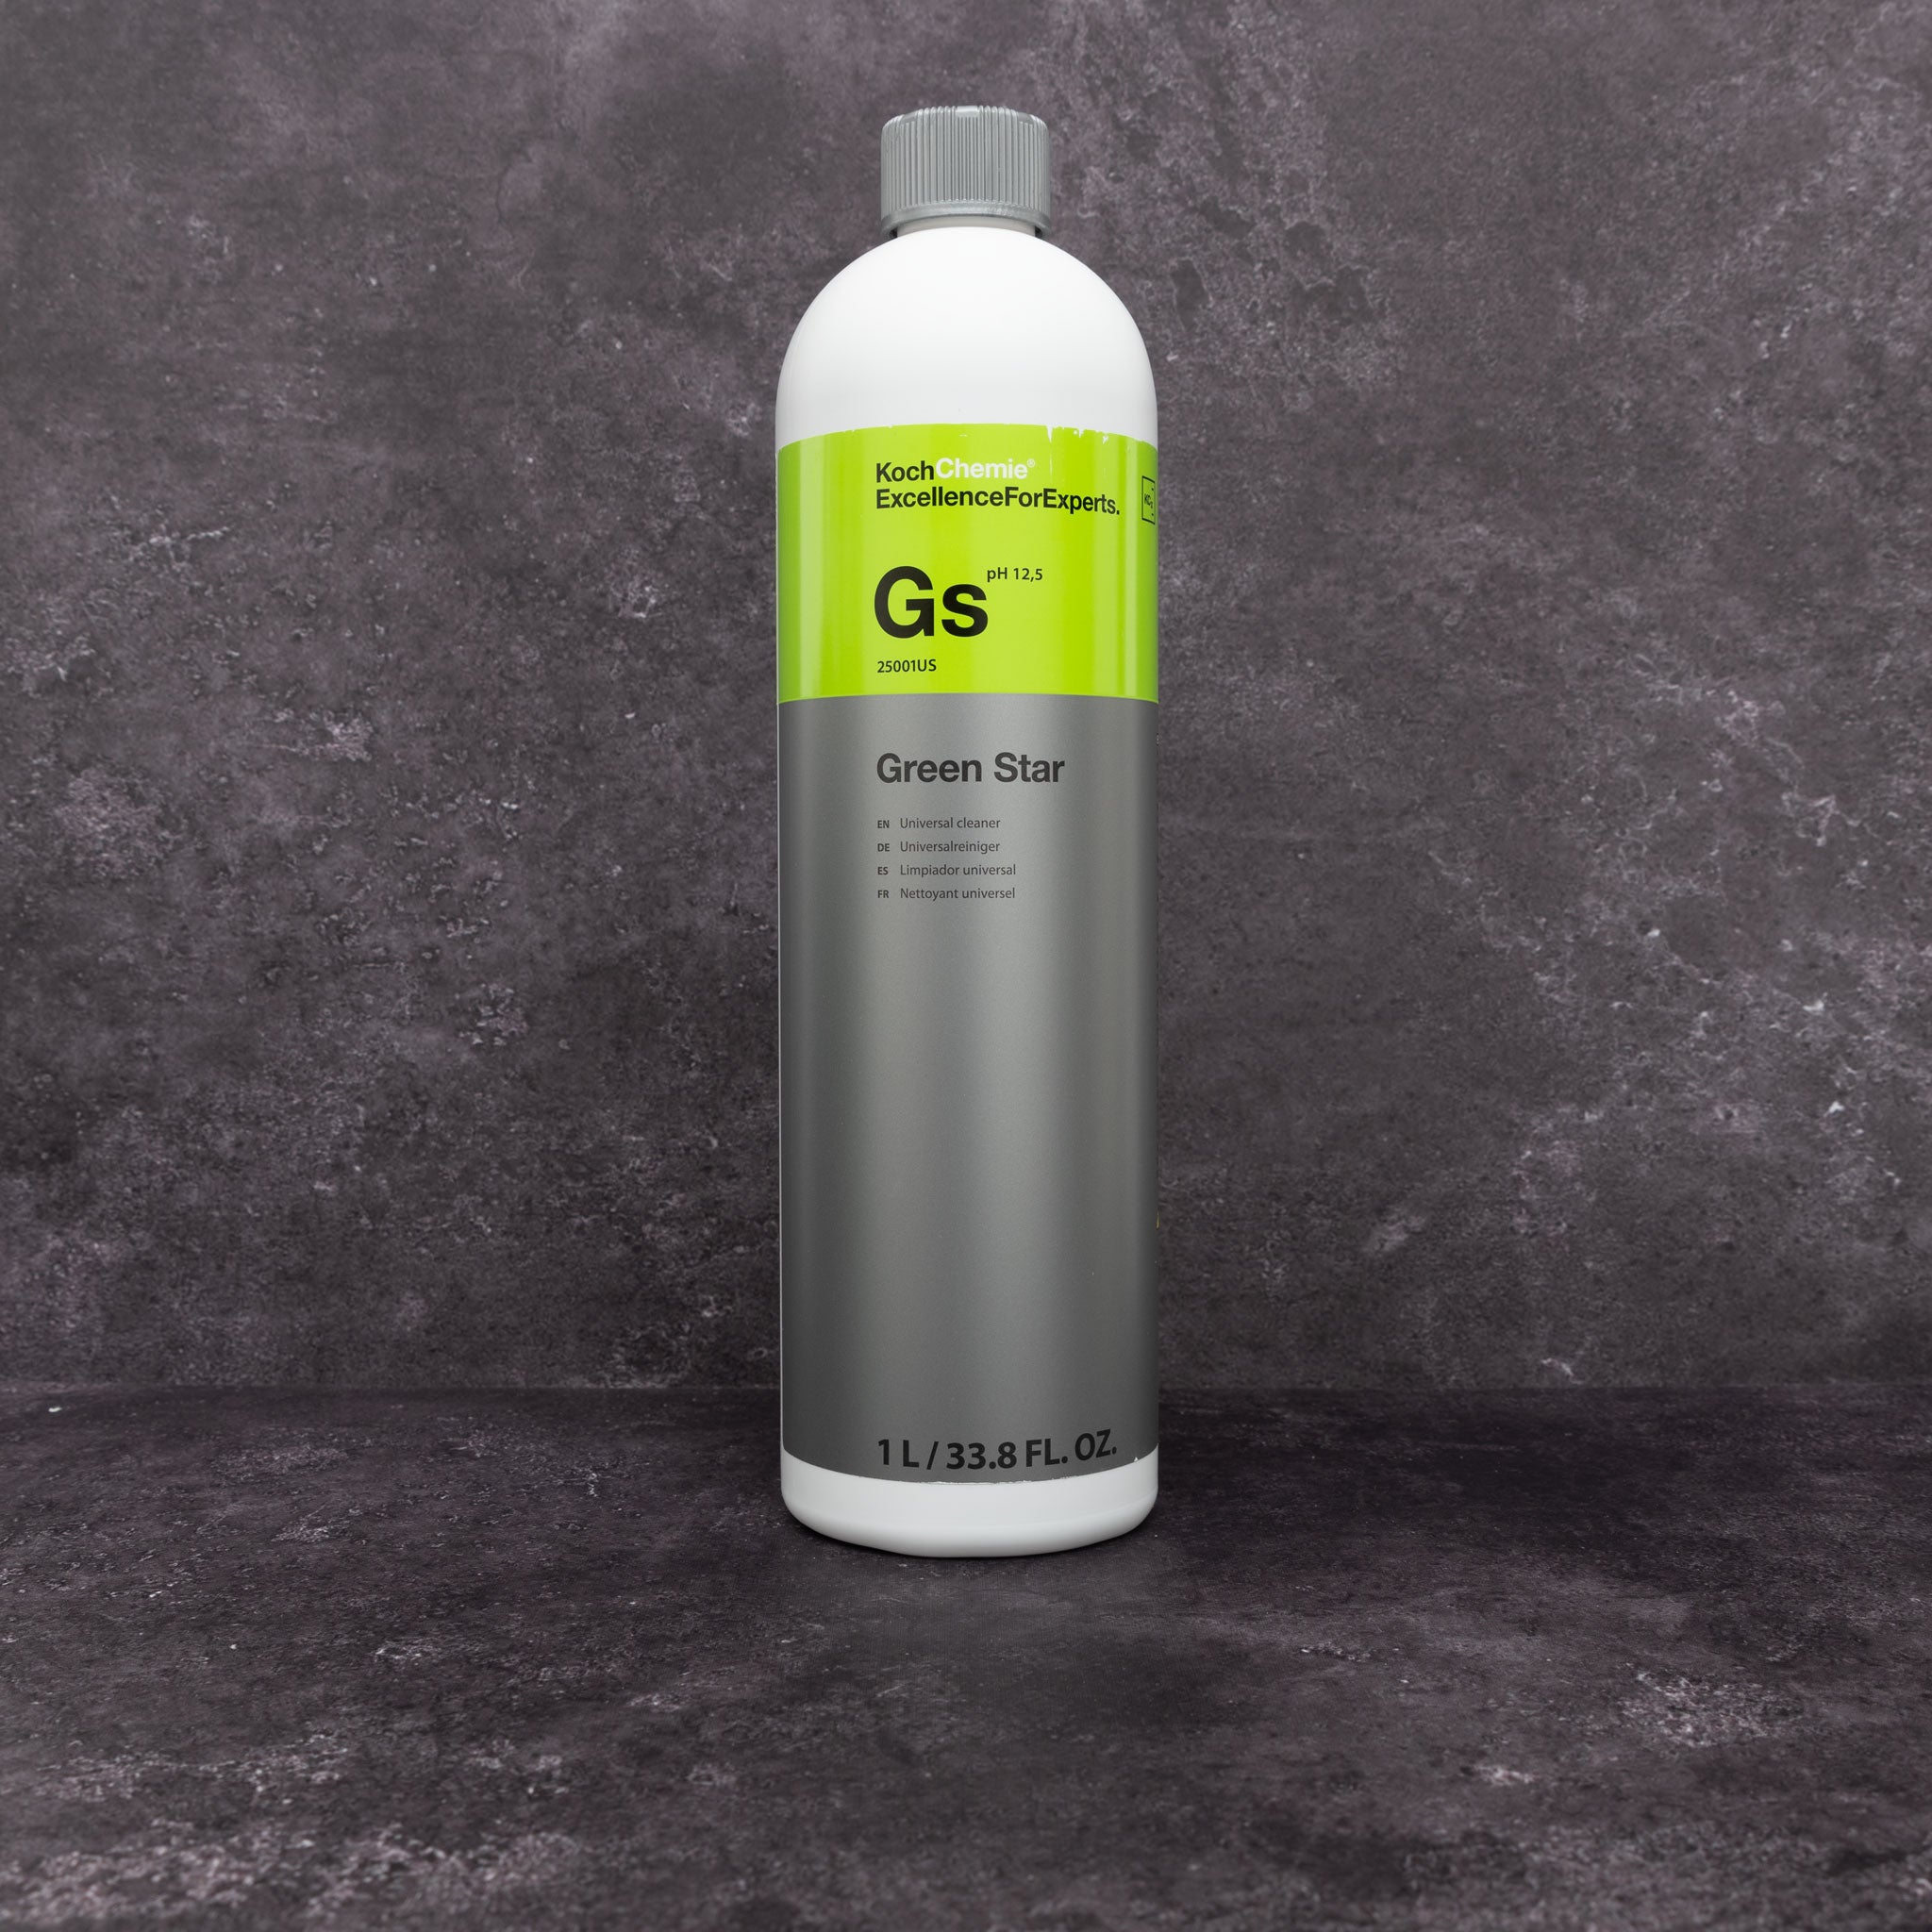 Koch Chemie Gentle Snow Foam (GSF) + Green Star (GS) test 